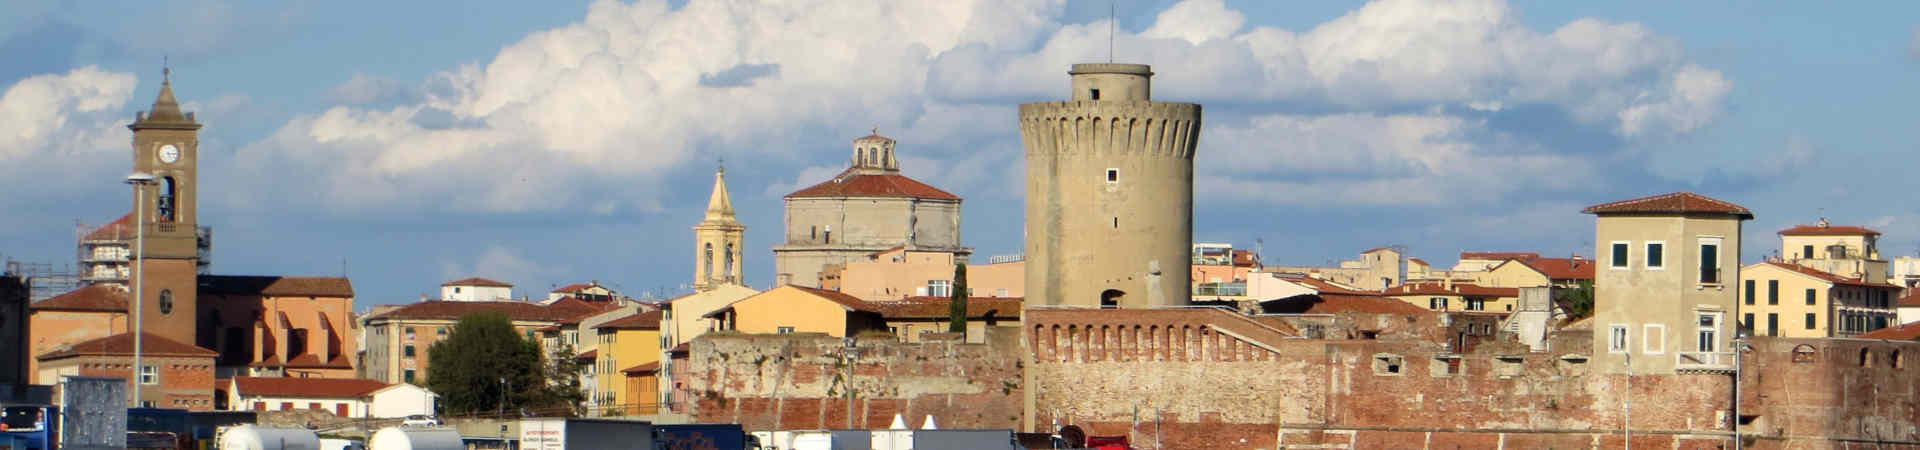 Imagen recurso del puerto de destino Livorno para la ruta en ferry Palermo - Livorno